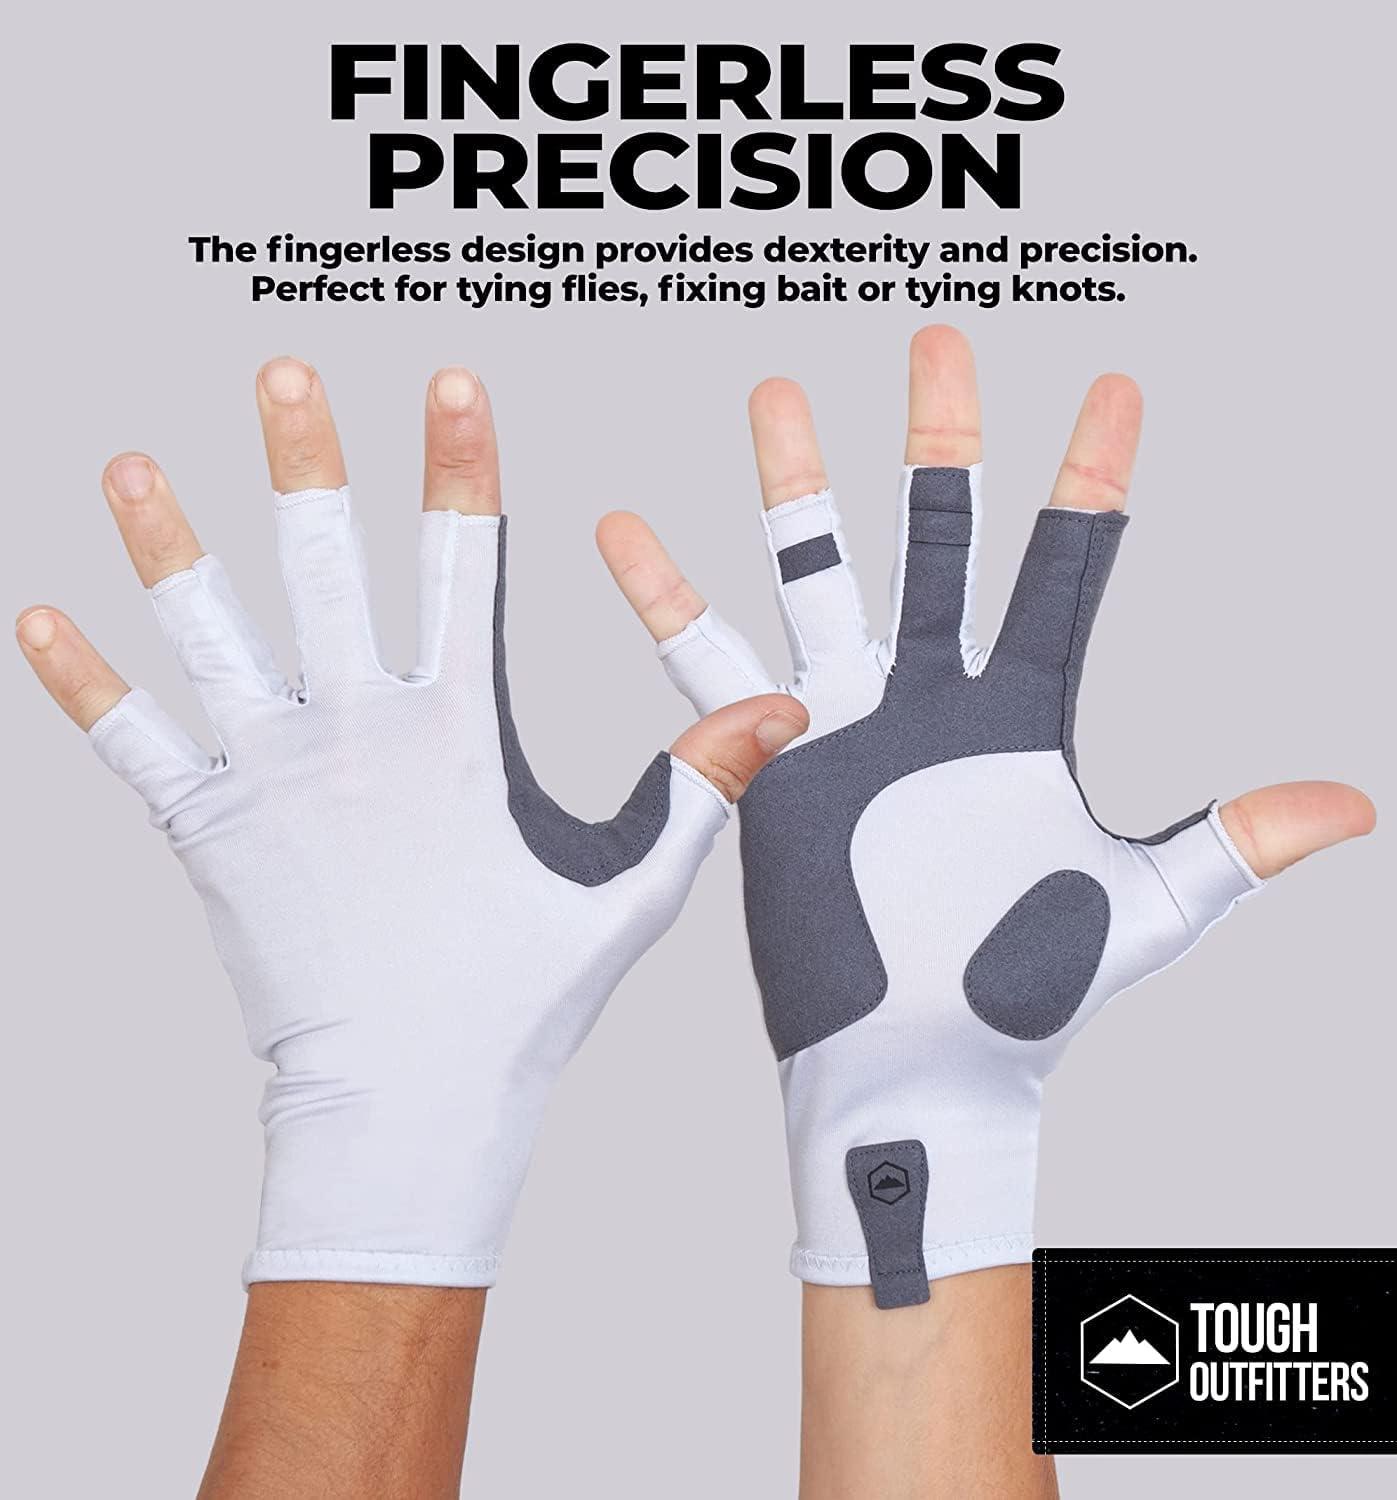 Tough Outdoors UV Fishing Gloves - Fingerless Fishing Gloves Men & Women - UPF  50+ Sun Gloves - UV Protection Kayaking Gloves - Sun Protection Fishing  Gloves - Paddling Gloves & Sailing Gloves L / XL White